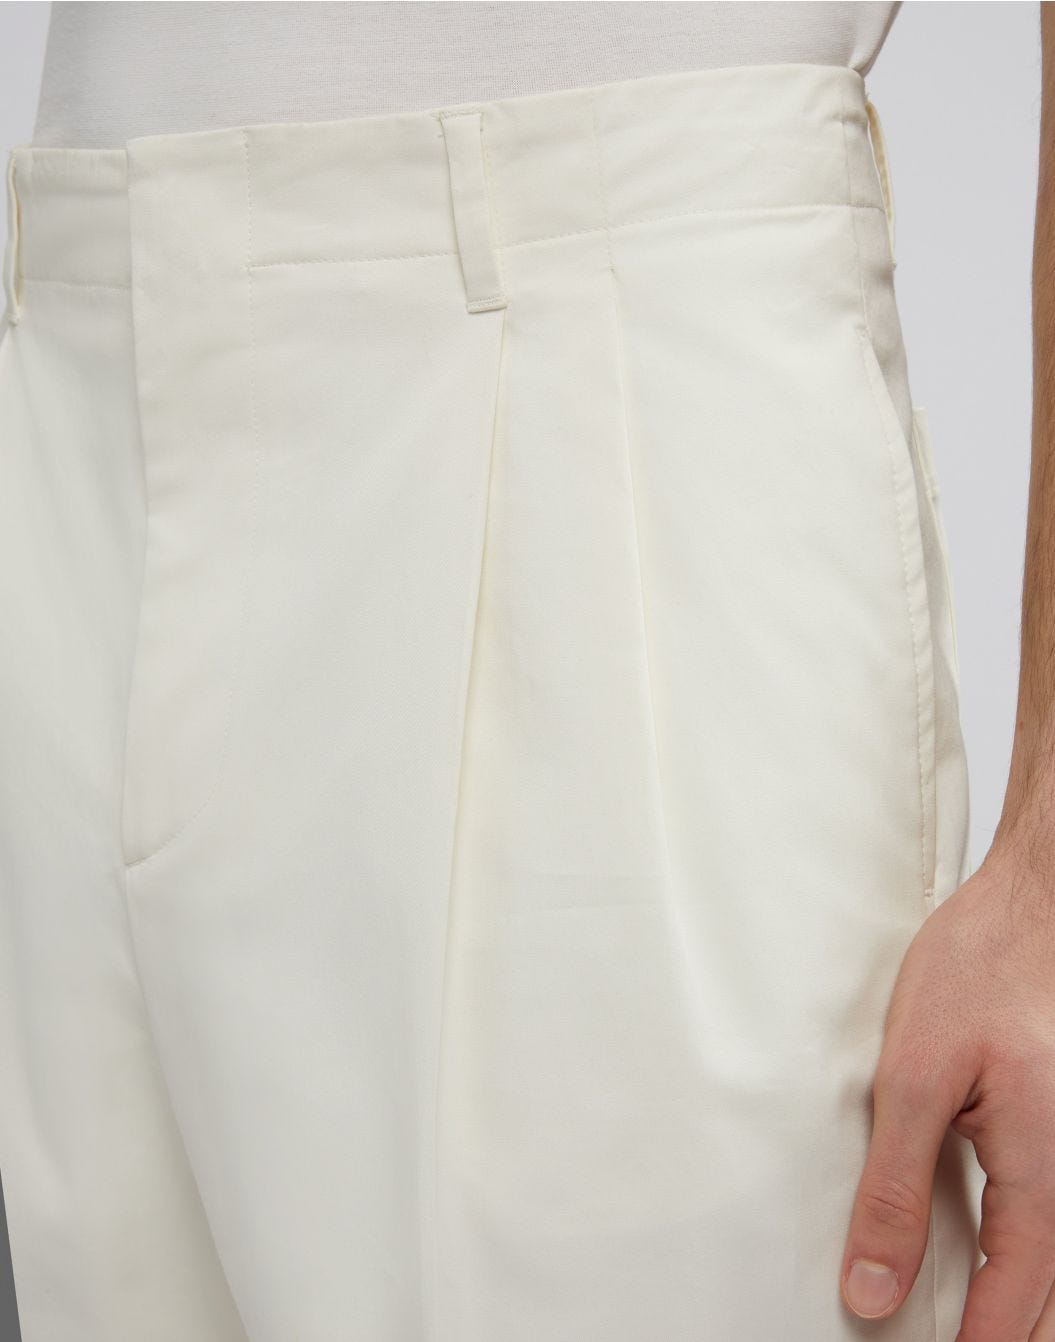 Pantalone beige in drill di cotone stretch